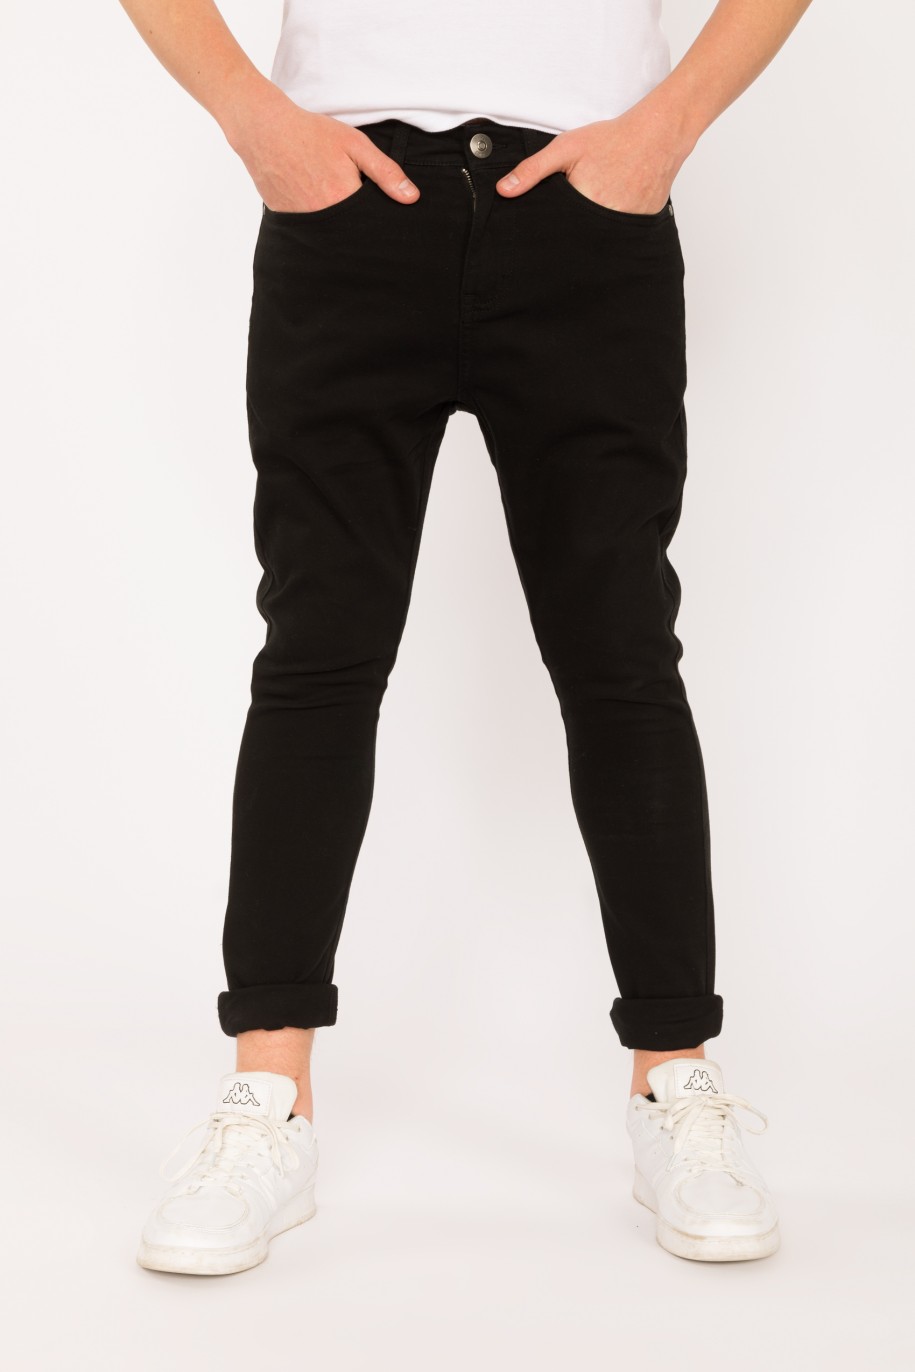 Czarne materiałowe spodnie dla chłopaka REGULAR - 28417